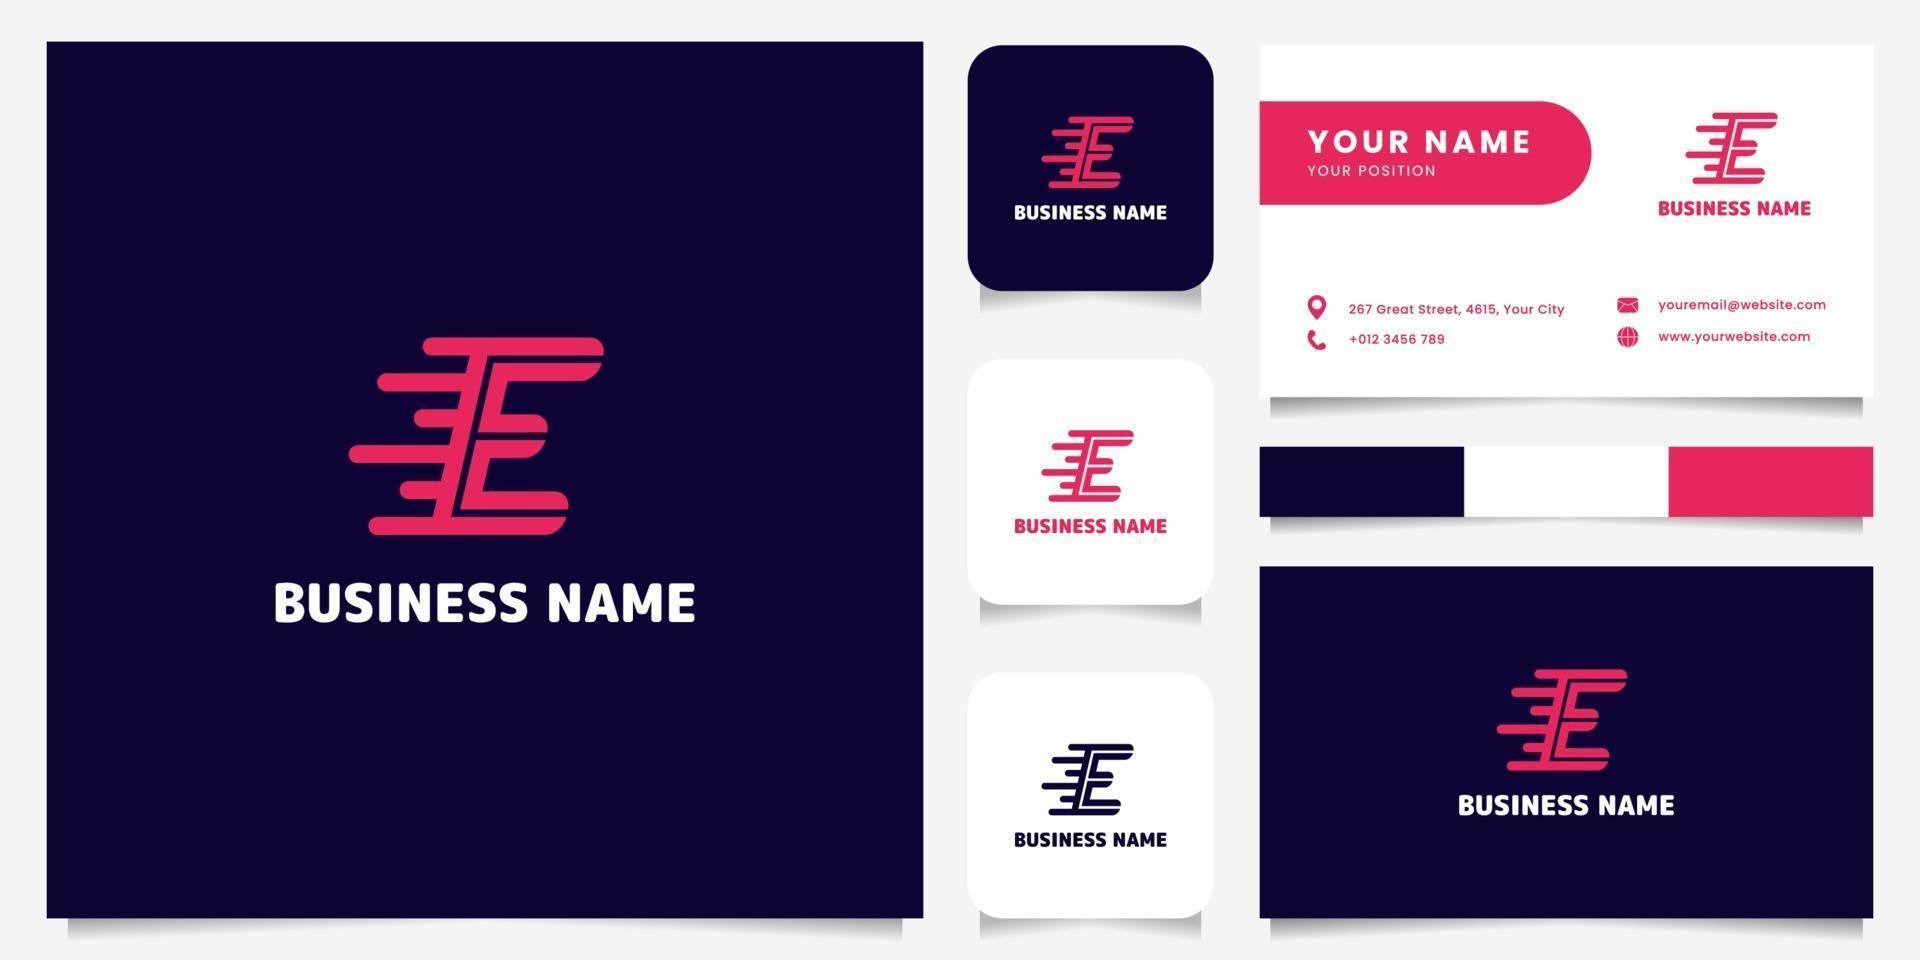 semplice e minimalista rosa brillante lettera e velocità logo nel logo di sfondo scuro con modello di biglietto da visita vettore